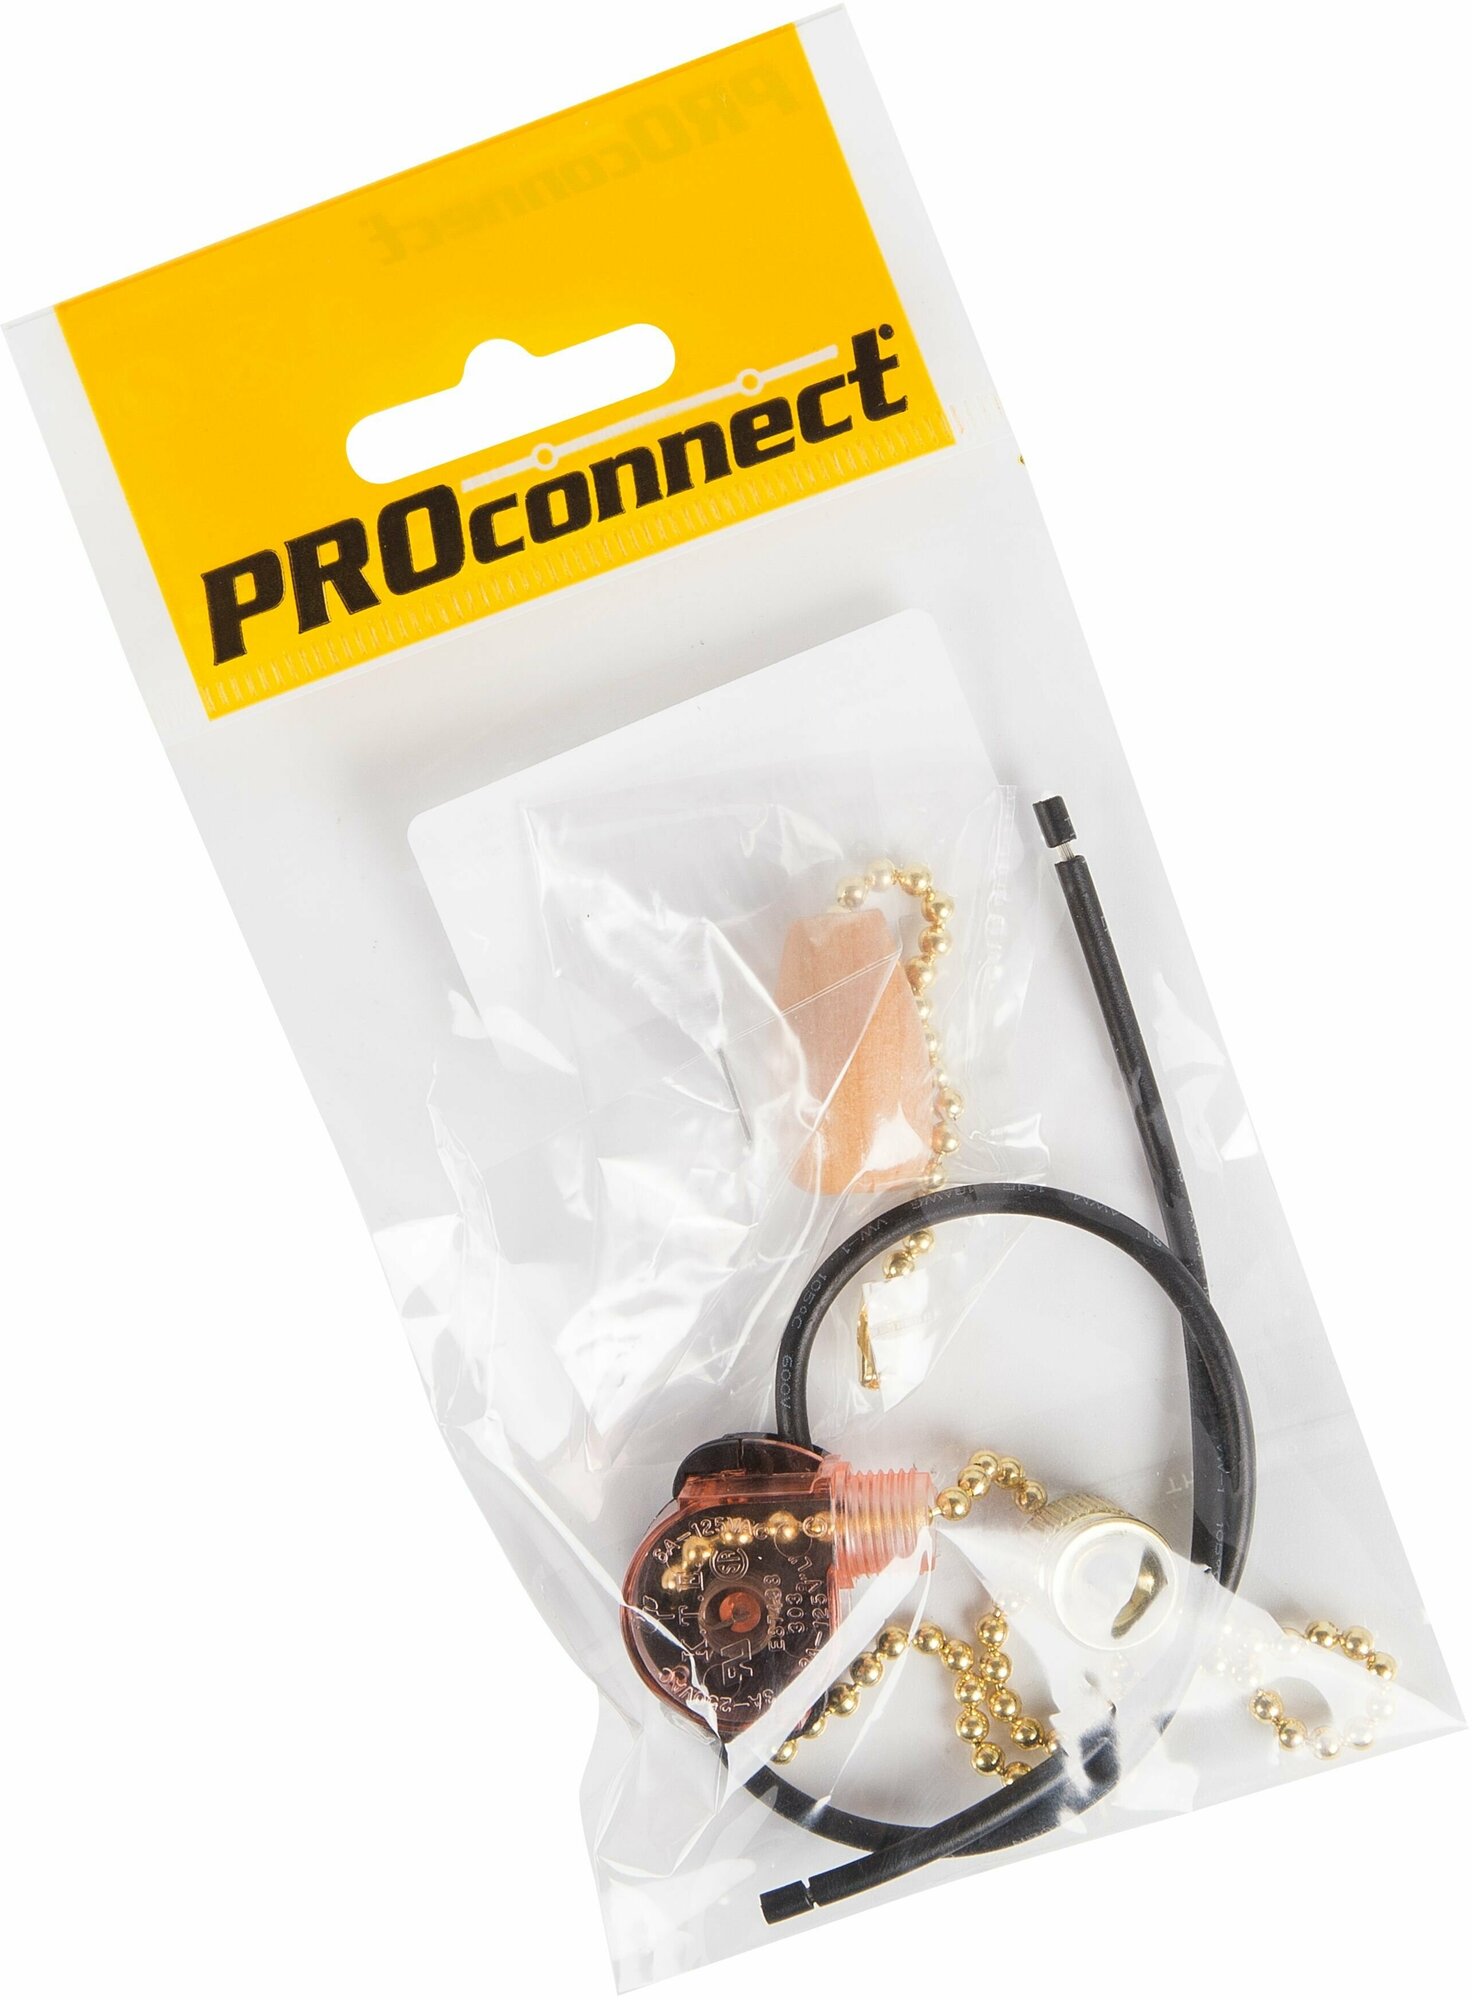 Выключатель для настенного светильника бра Proconnect c проводом и деревянным наконечником золотая